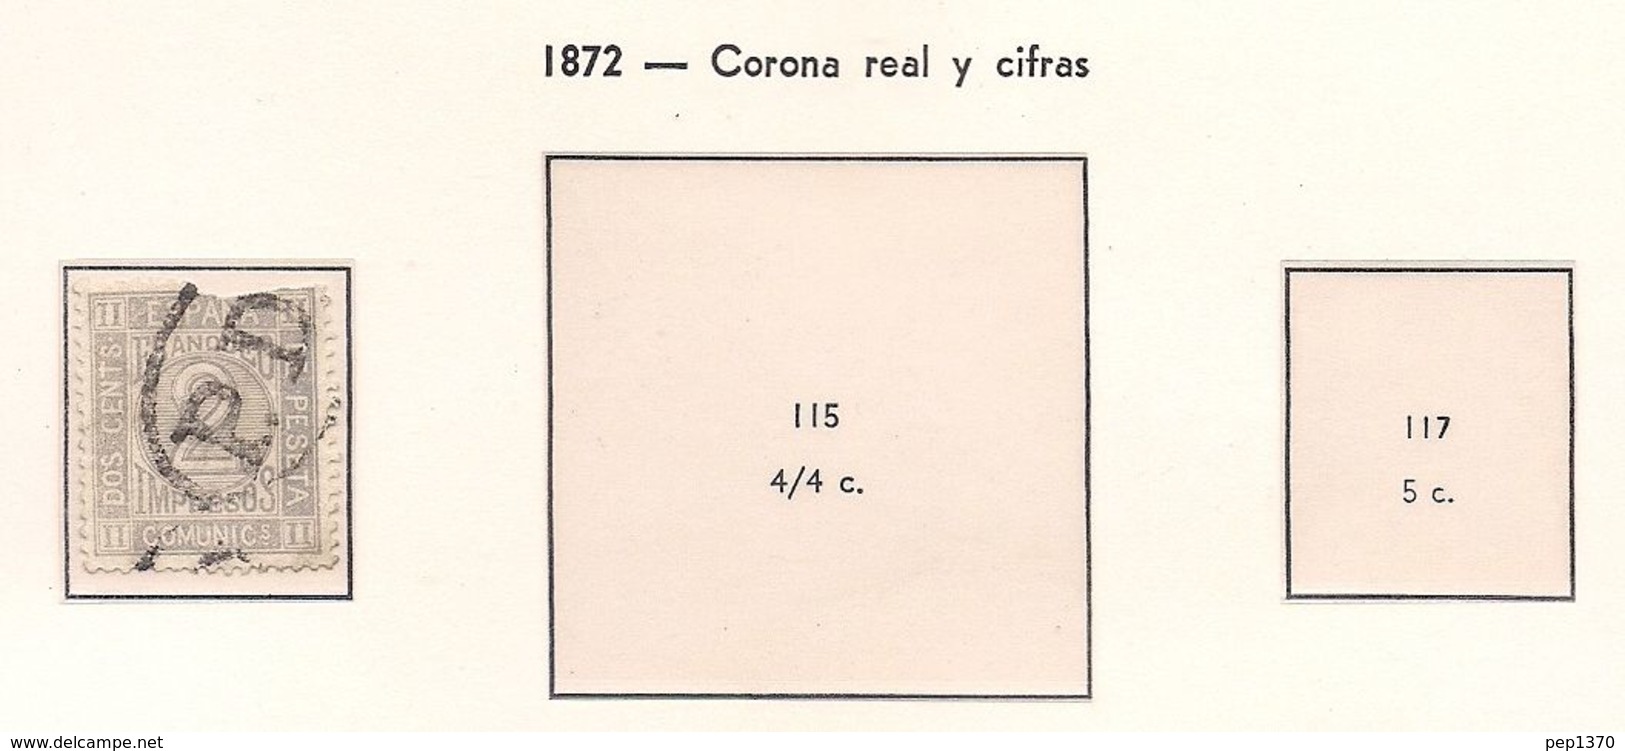 ESPAÑA 1872 - CORONA REAL Y CIFRAS - EDIFIL Nº 116 - USADO Y ROTO - Usados